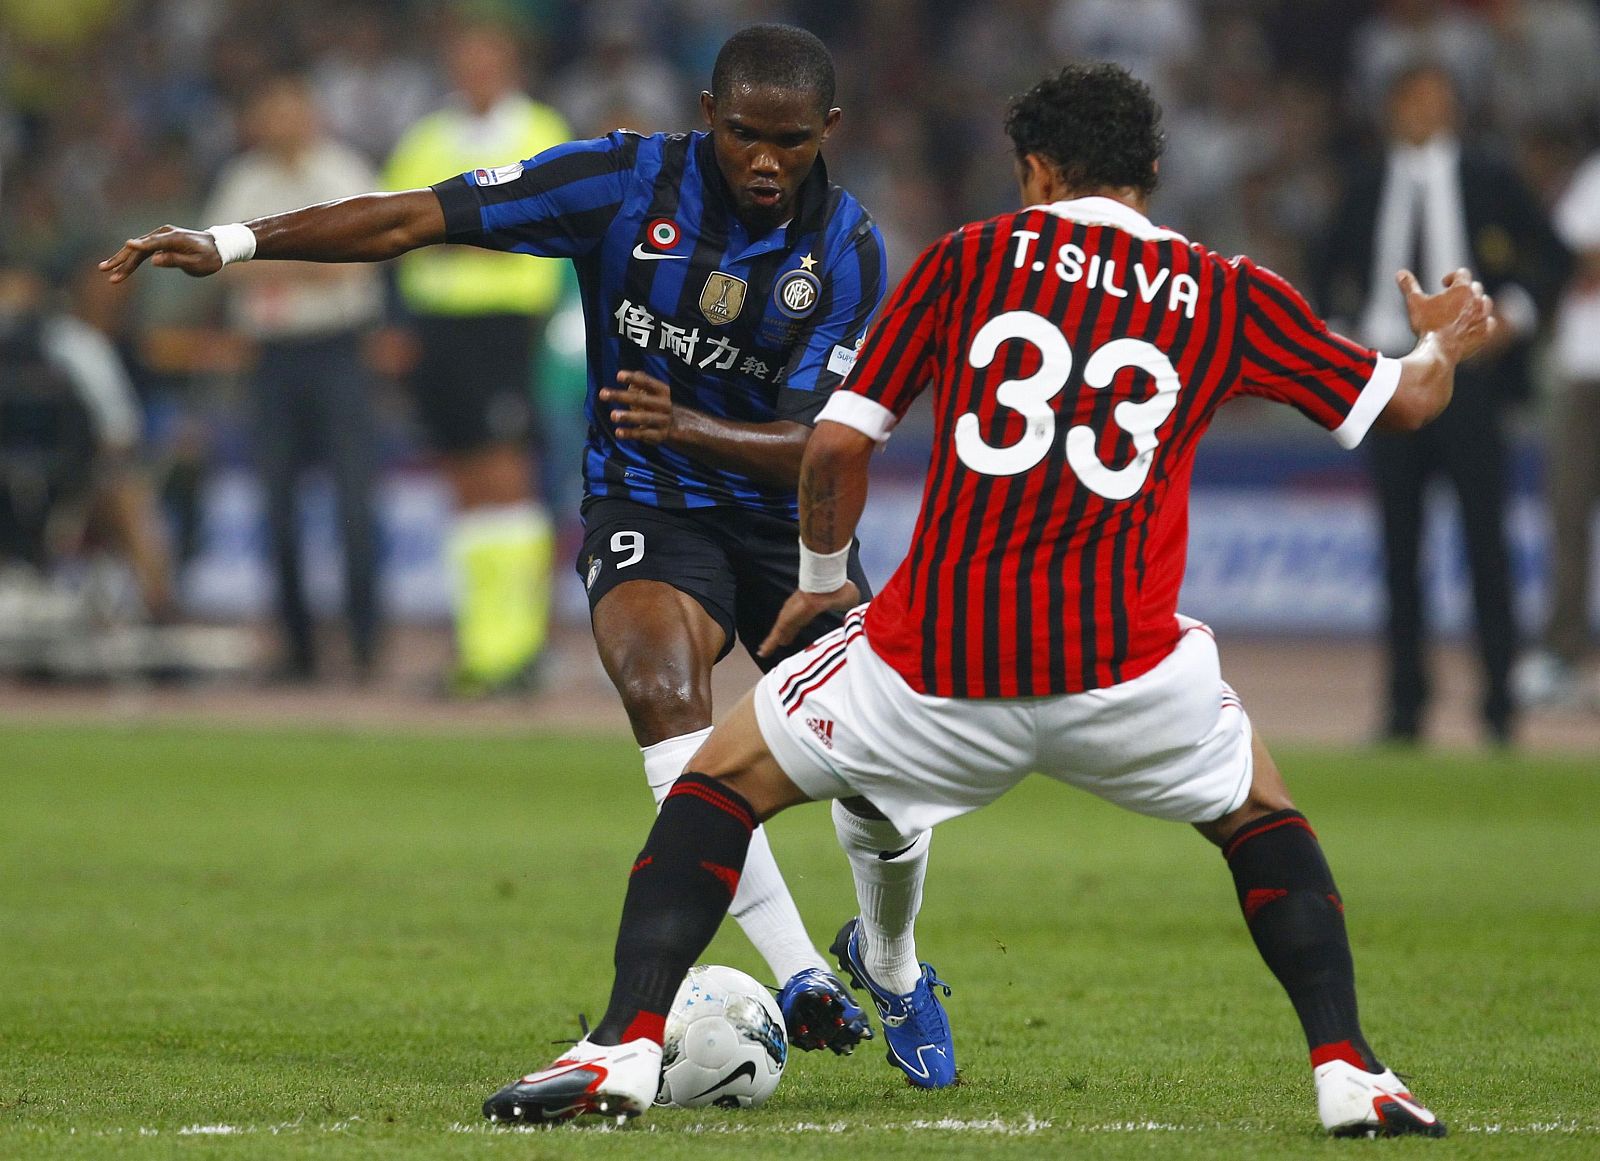 La Supercopa de Italia puede ser el último partido de Eto'o con el Inter, según su agente